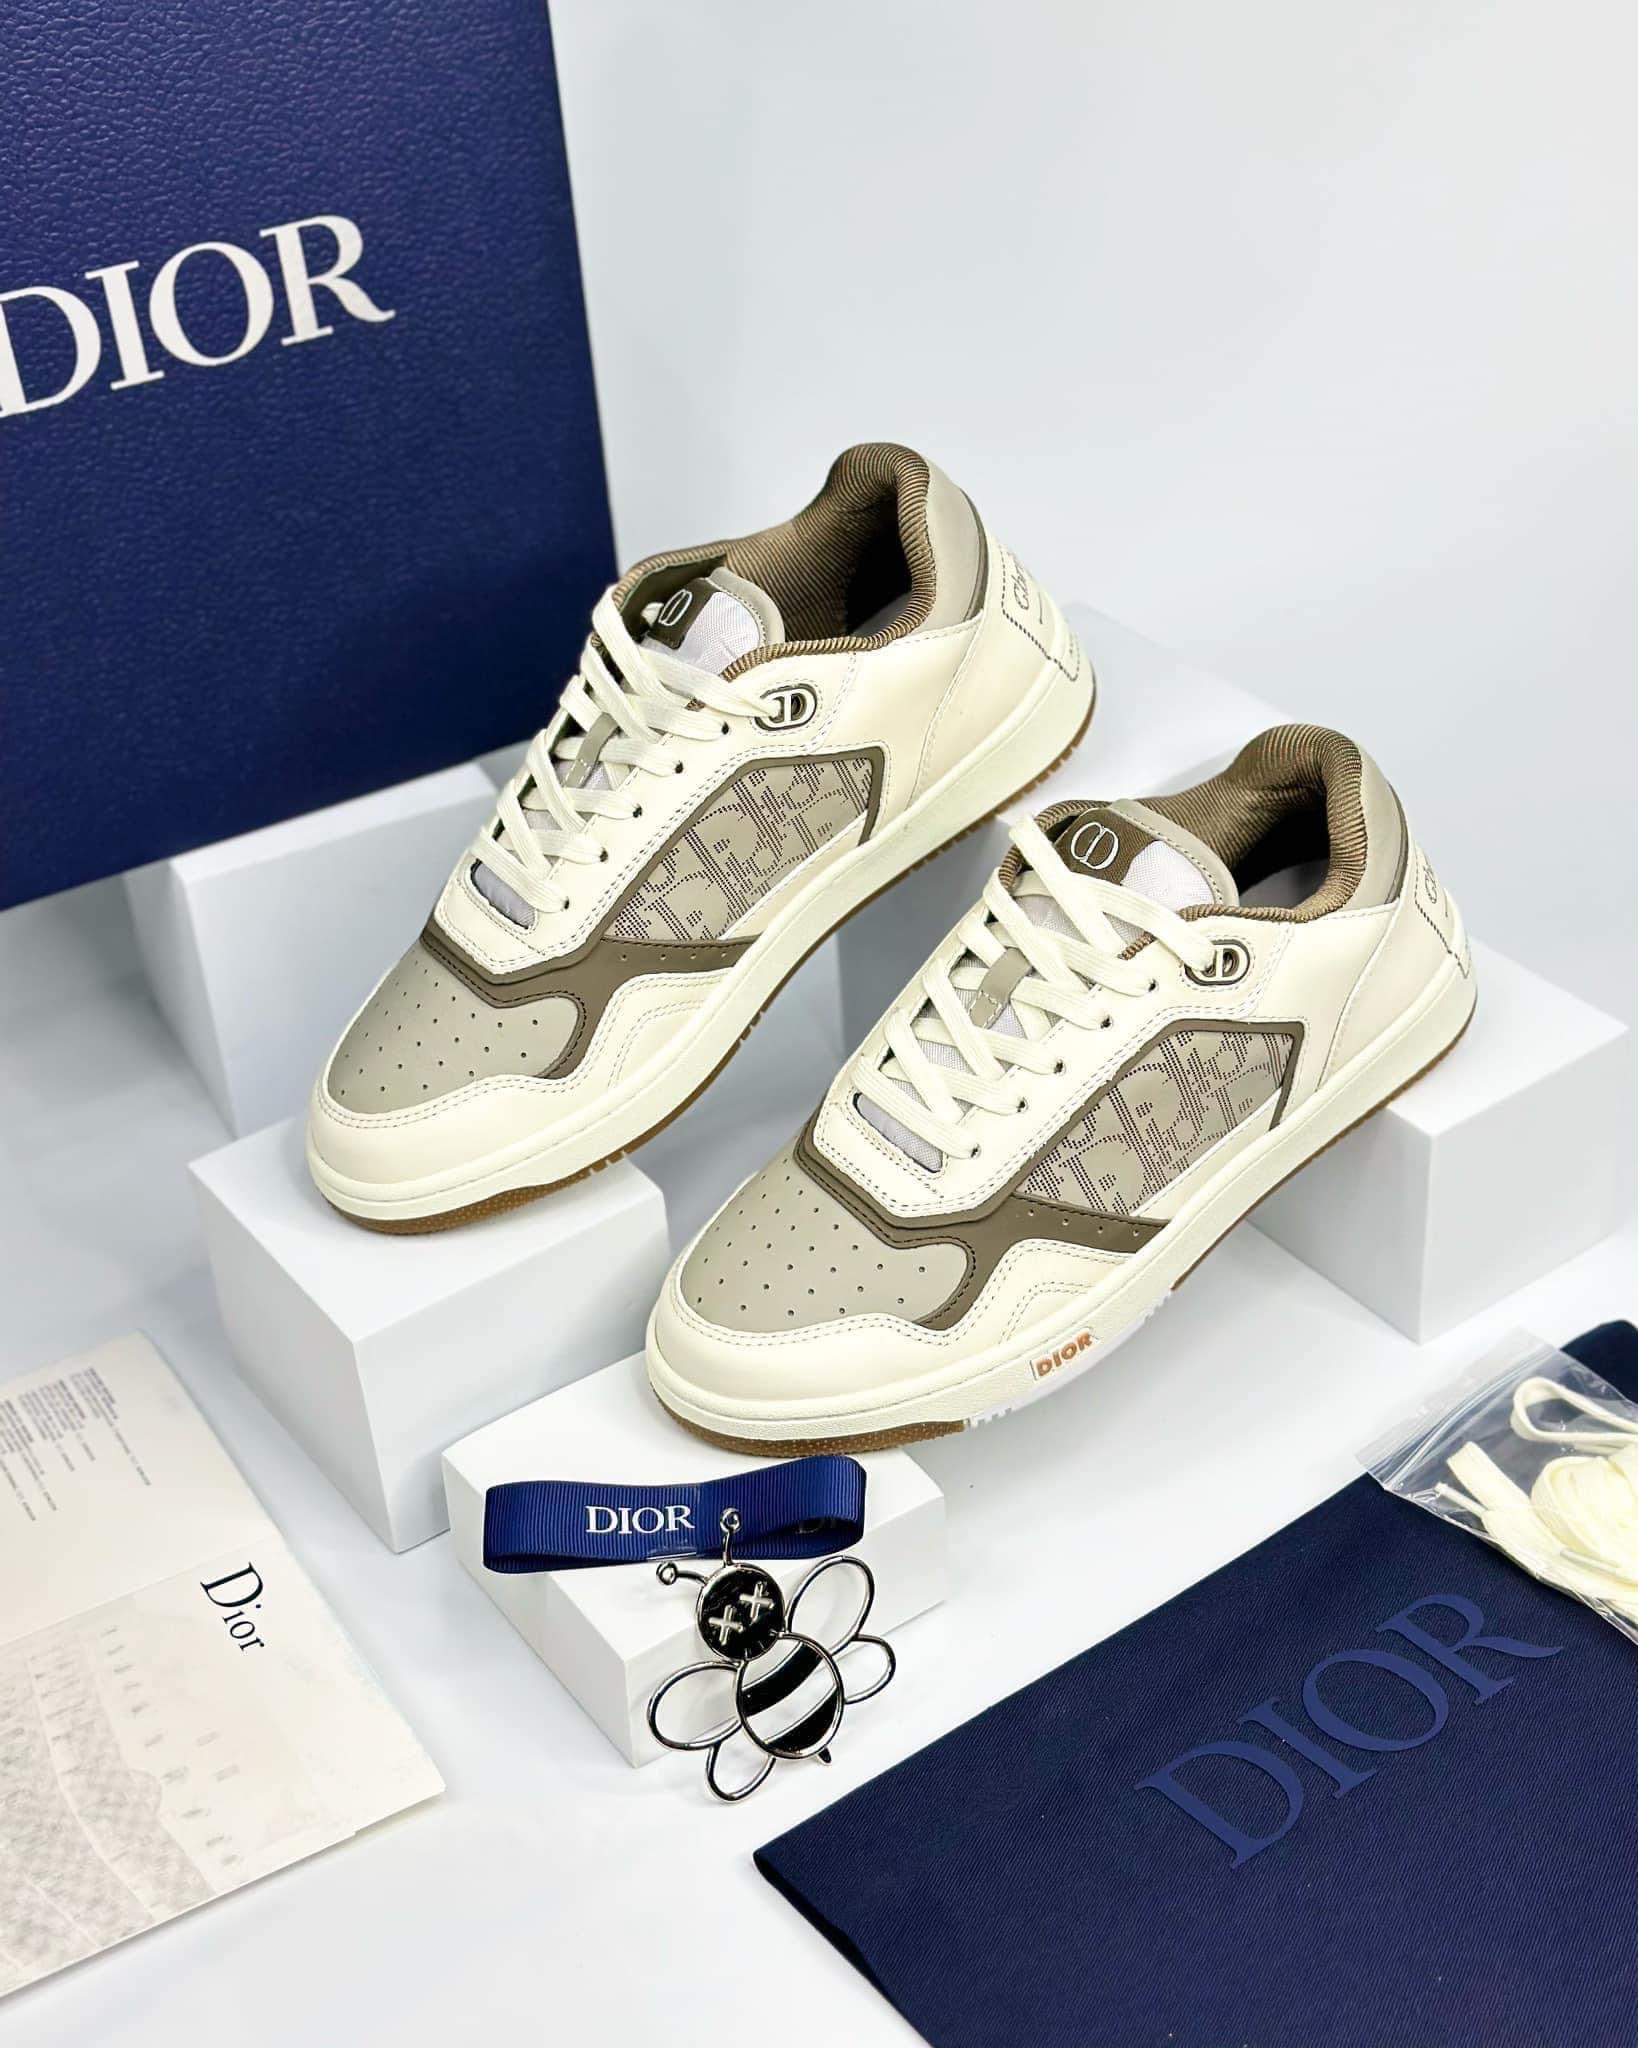 Giày Dior có giá bán như thế nào Cập nhật các mẫu giày Dior đẹp nhất tại  Shopgiayreplica  Megateen  Kênh thông tin đa chiều về giới trẻ